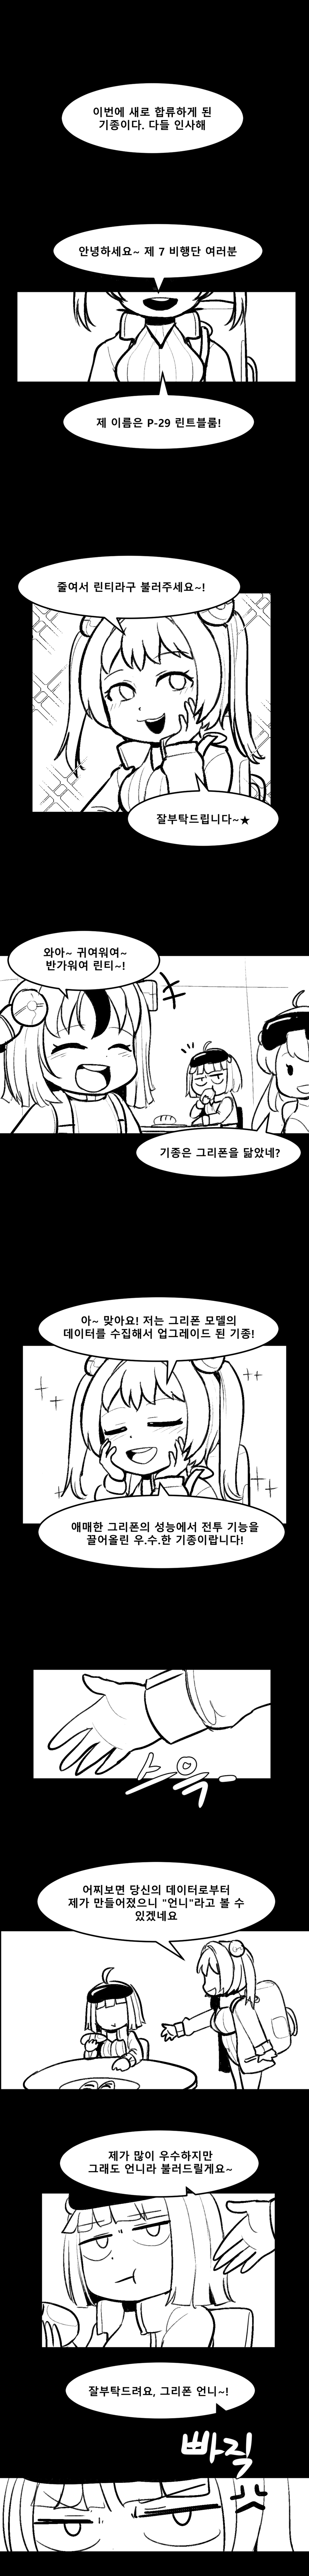 멸망대회 만화1.png